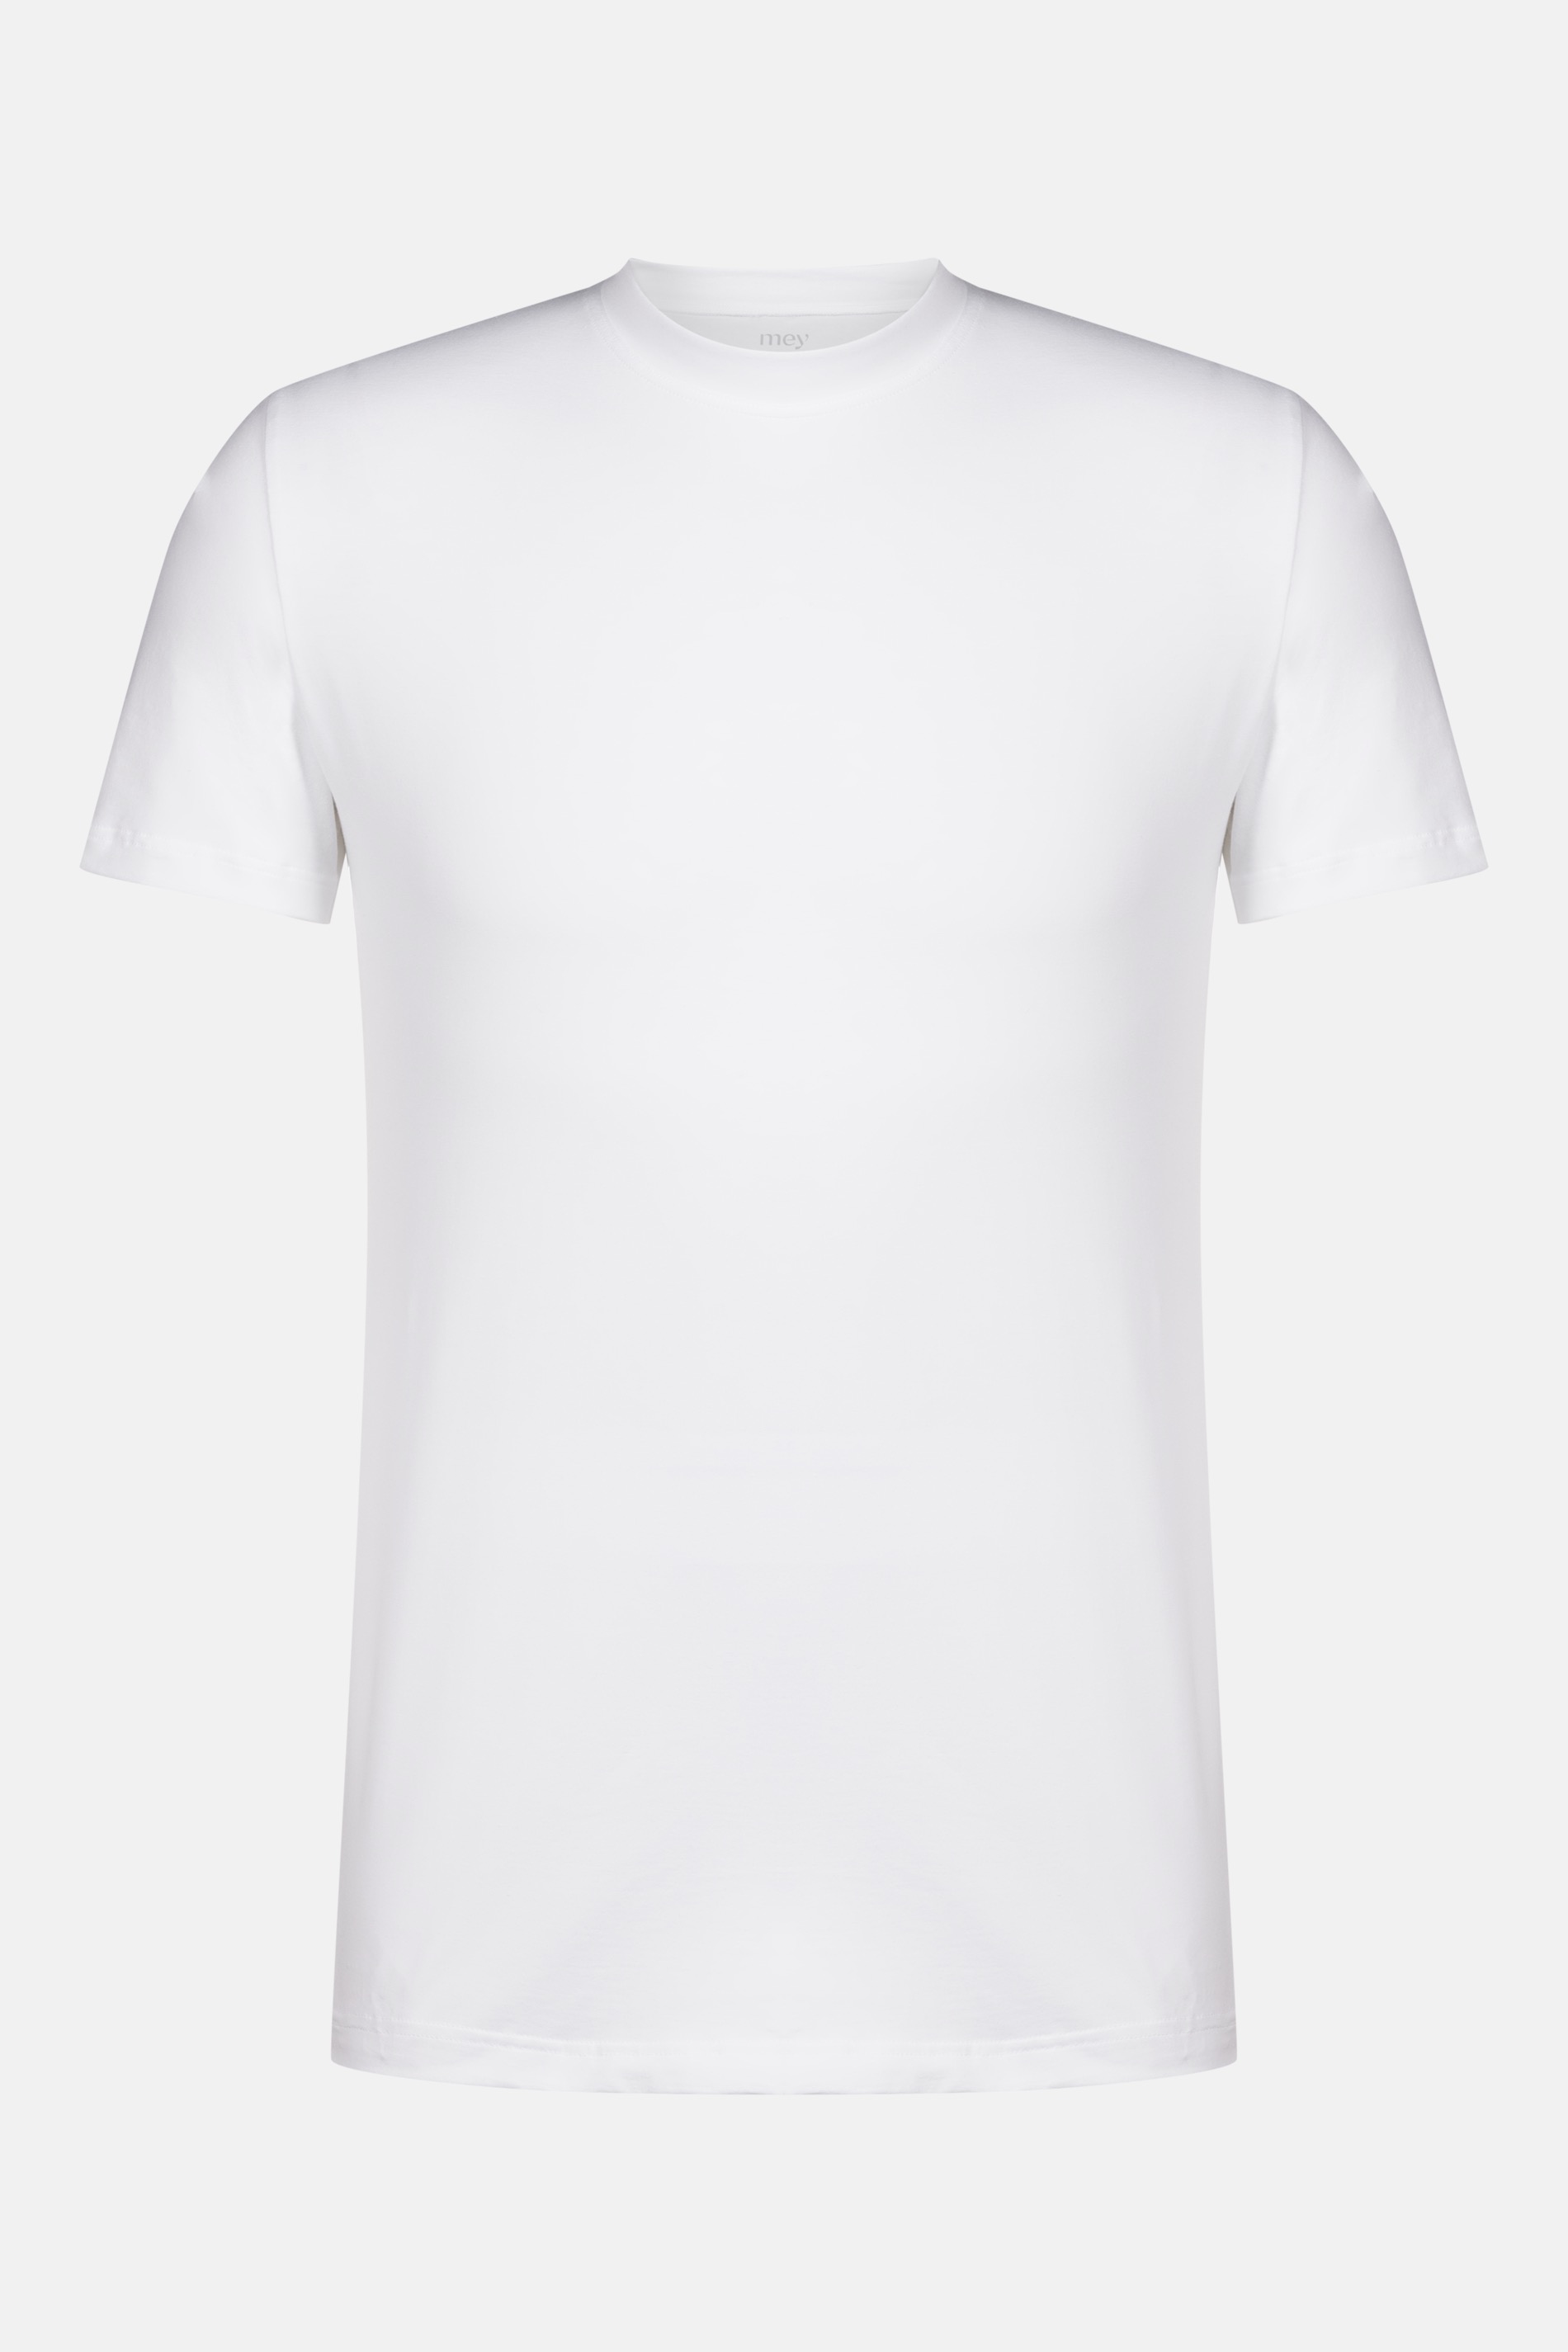 Shirt Weiss Serie Dry Cotton Freisteller | mey®